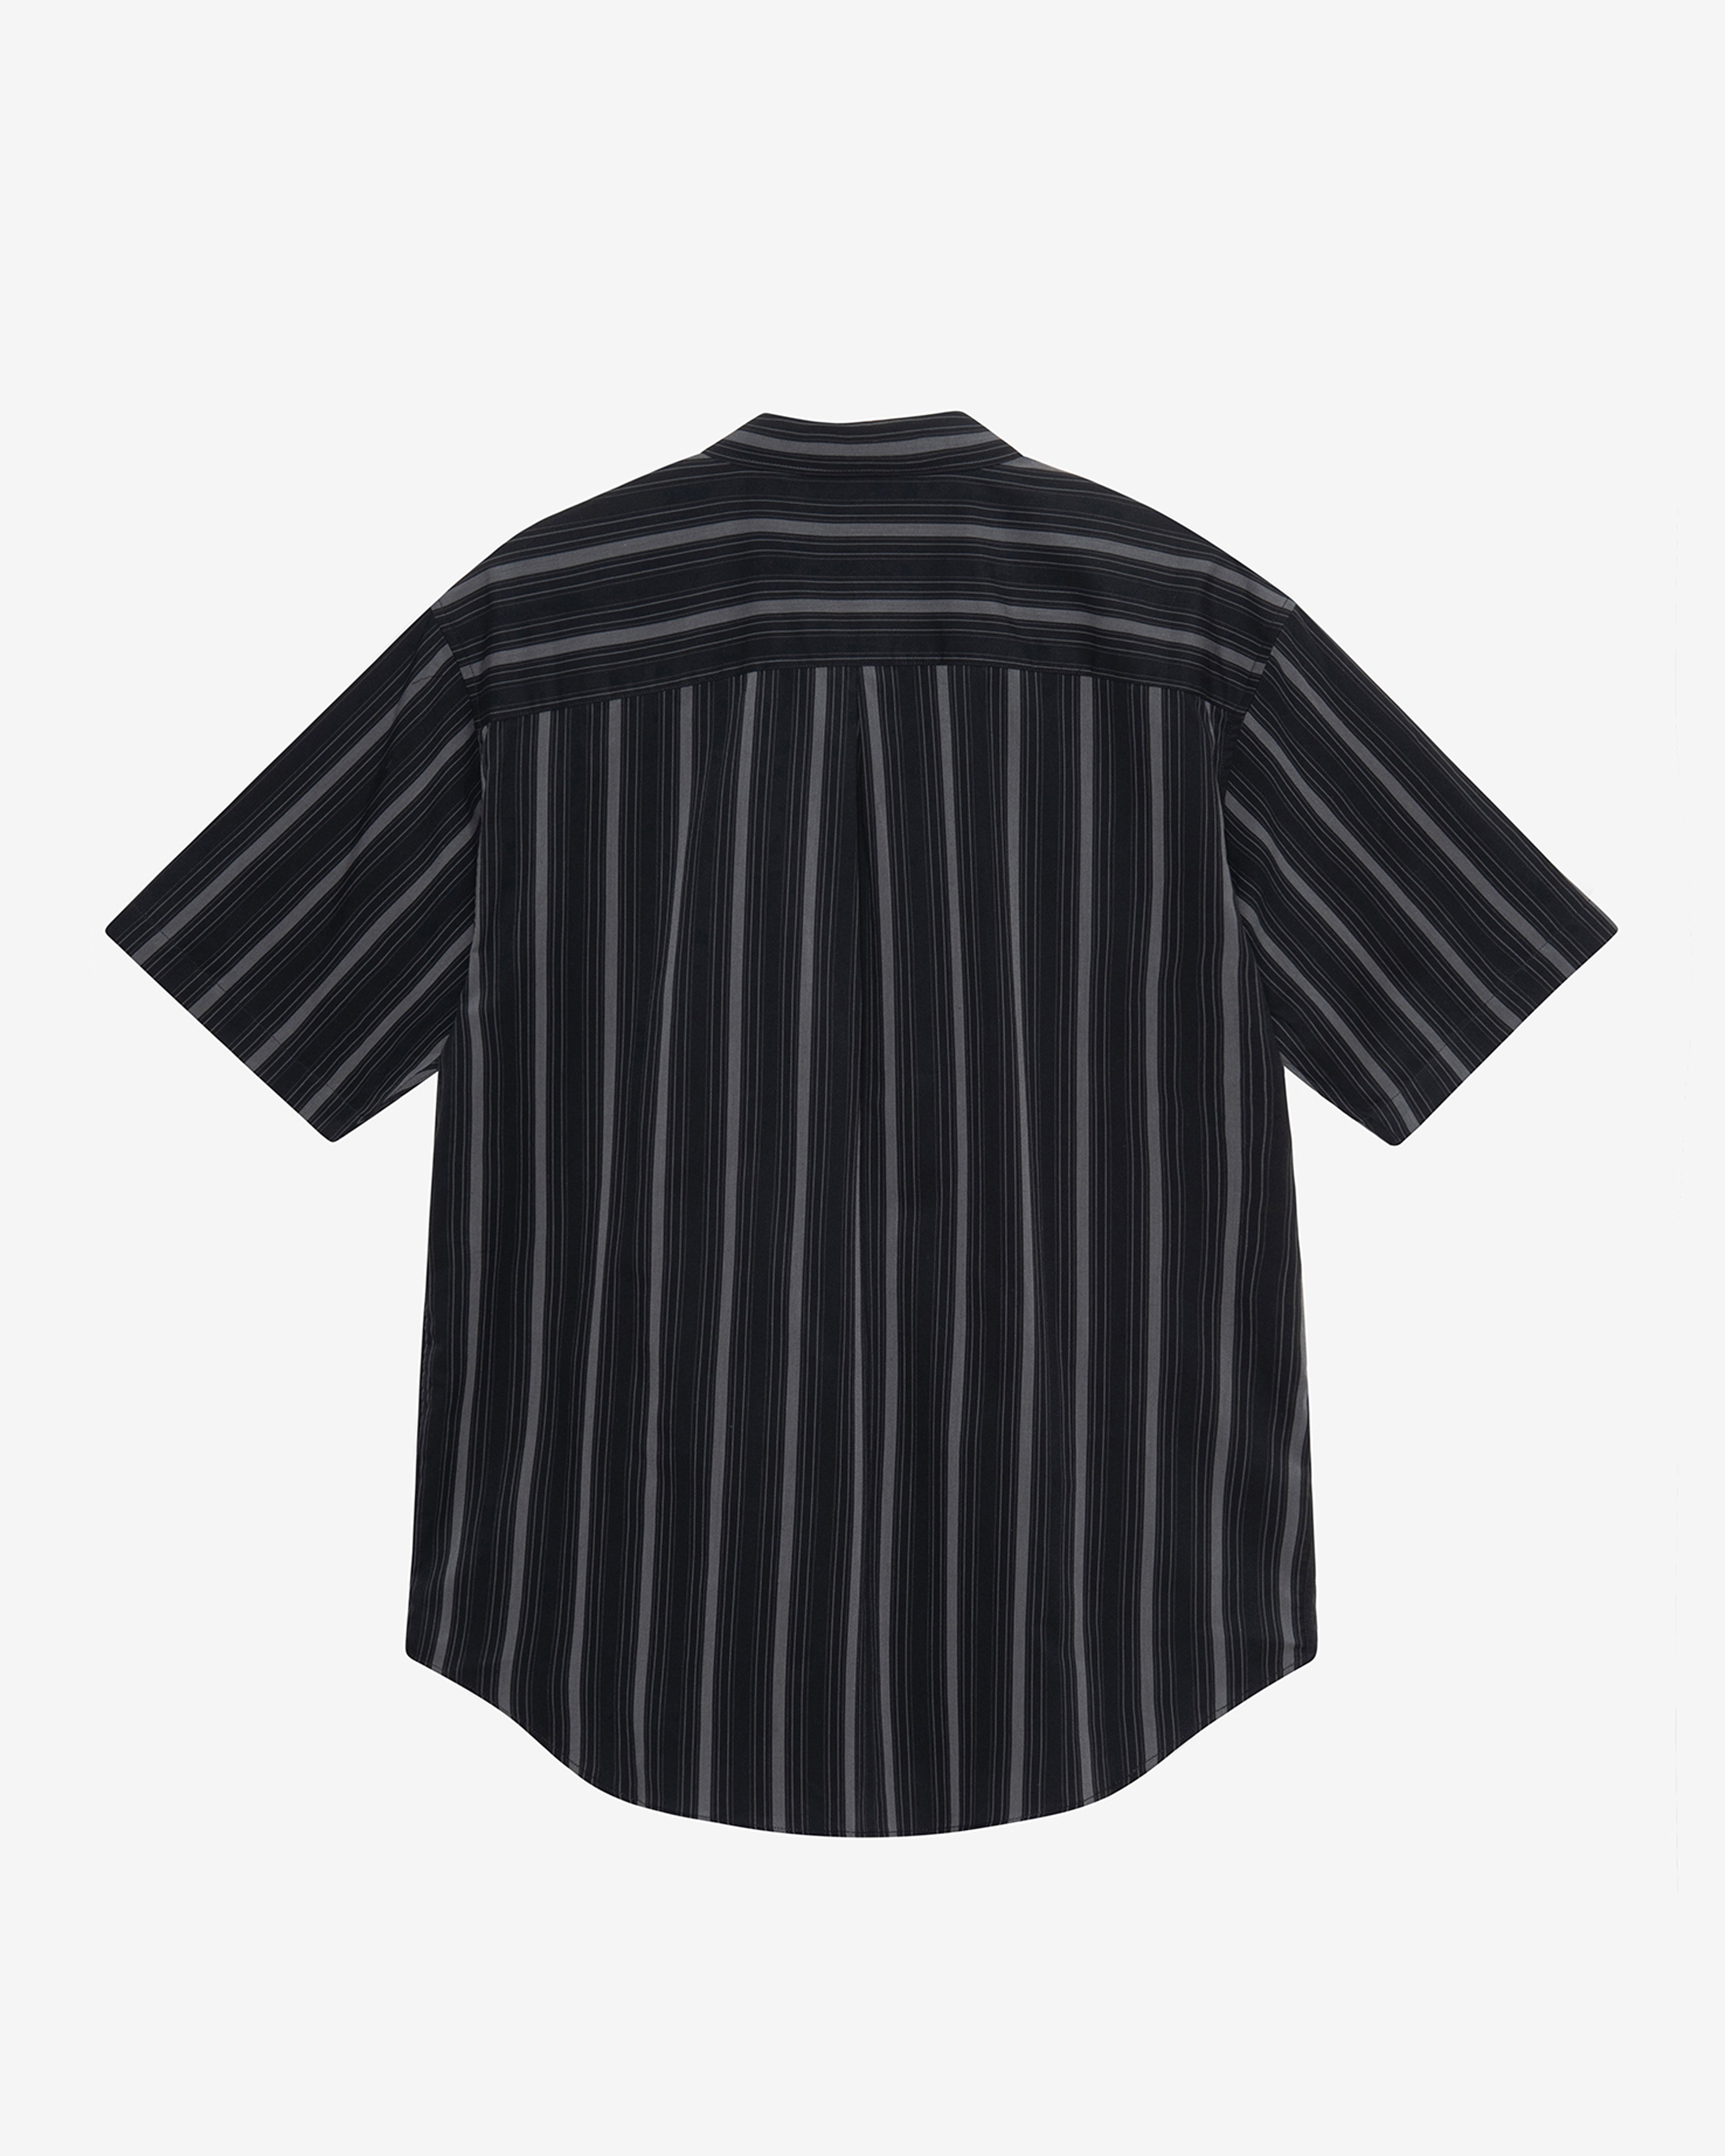 Stussy - Men's Boxy Short Sleeve Shirt Stripe - (Black)